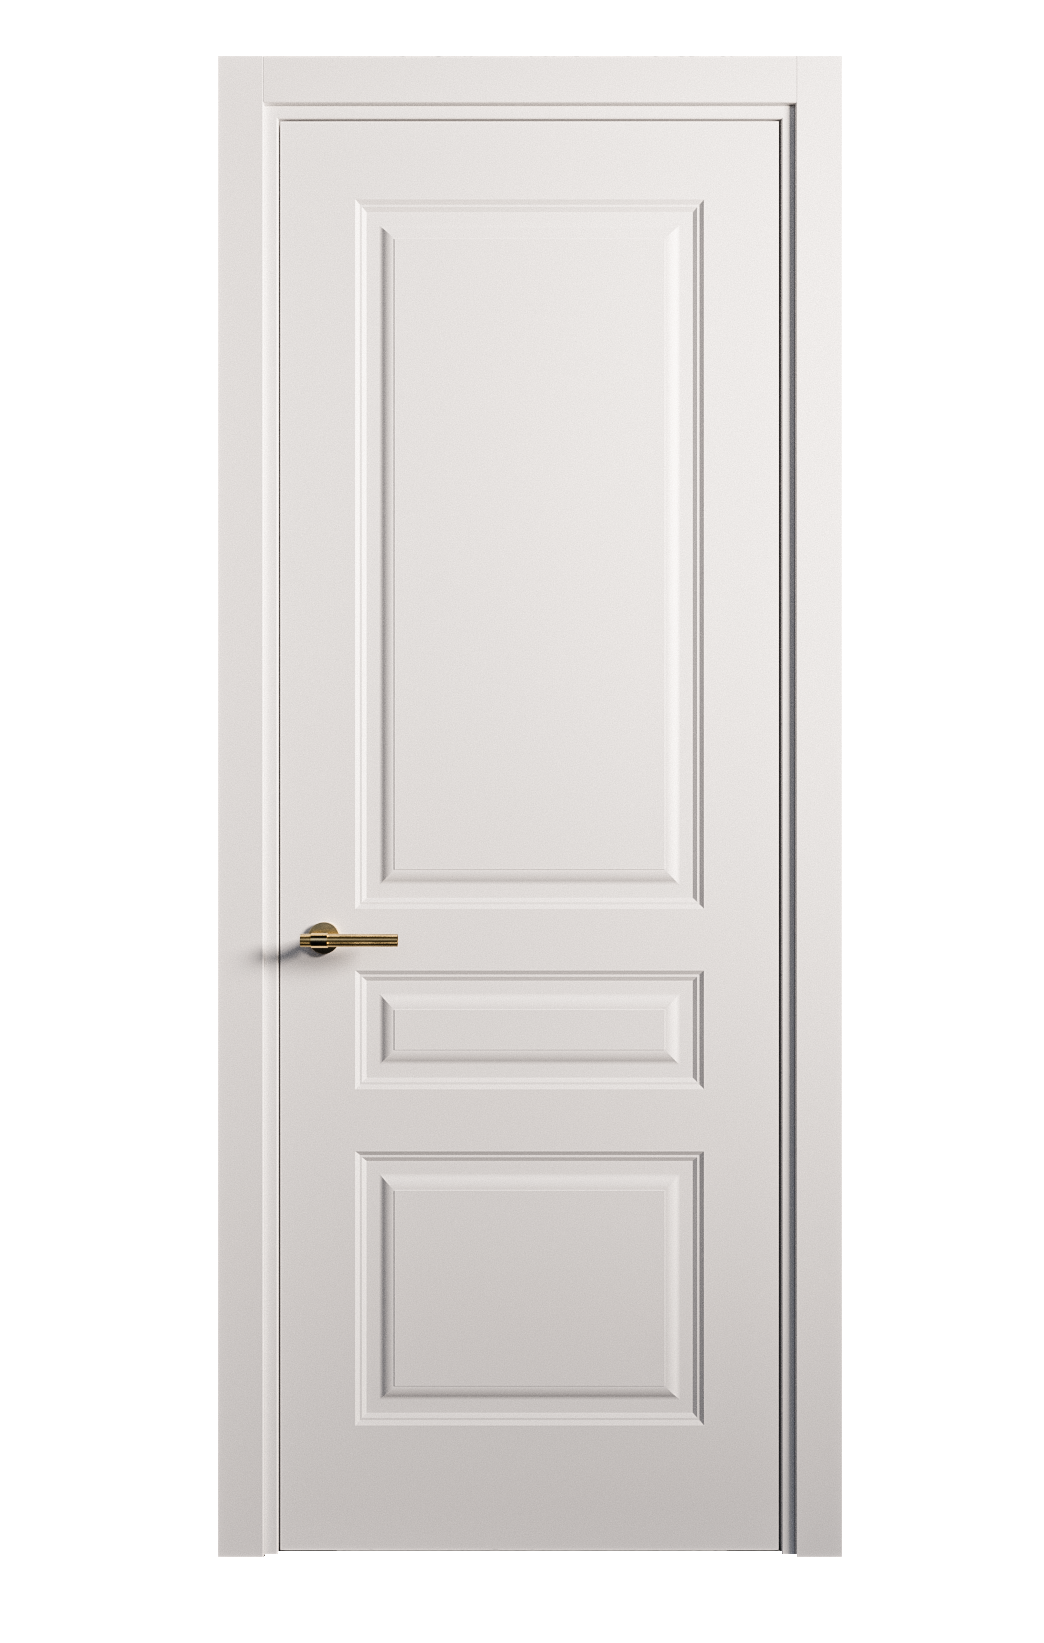 Межкомнатная дверь Вита-2 глухая эмаль ral 9003 26348